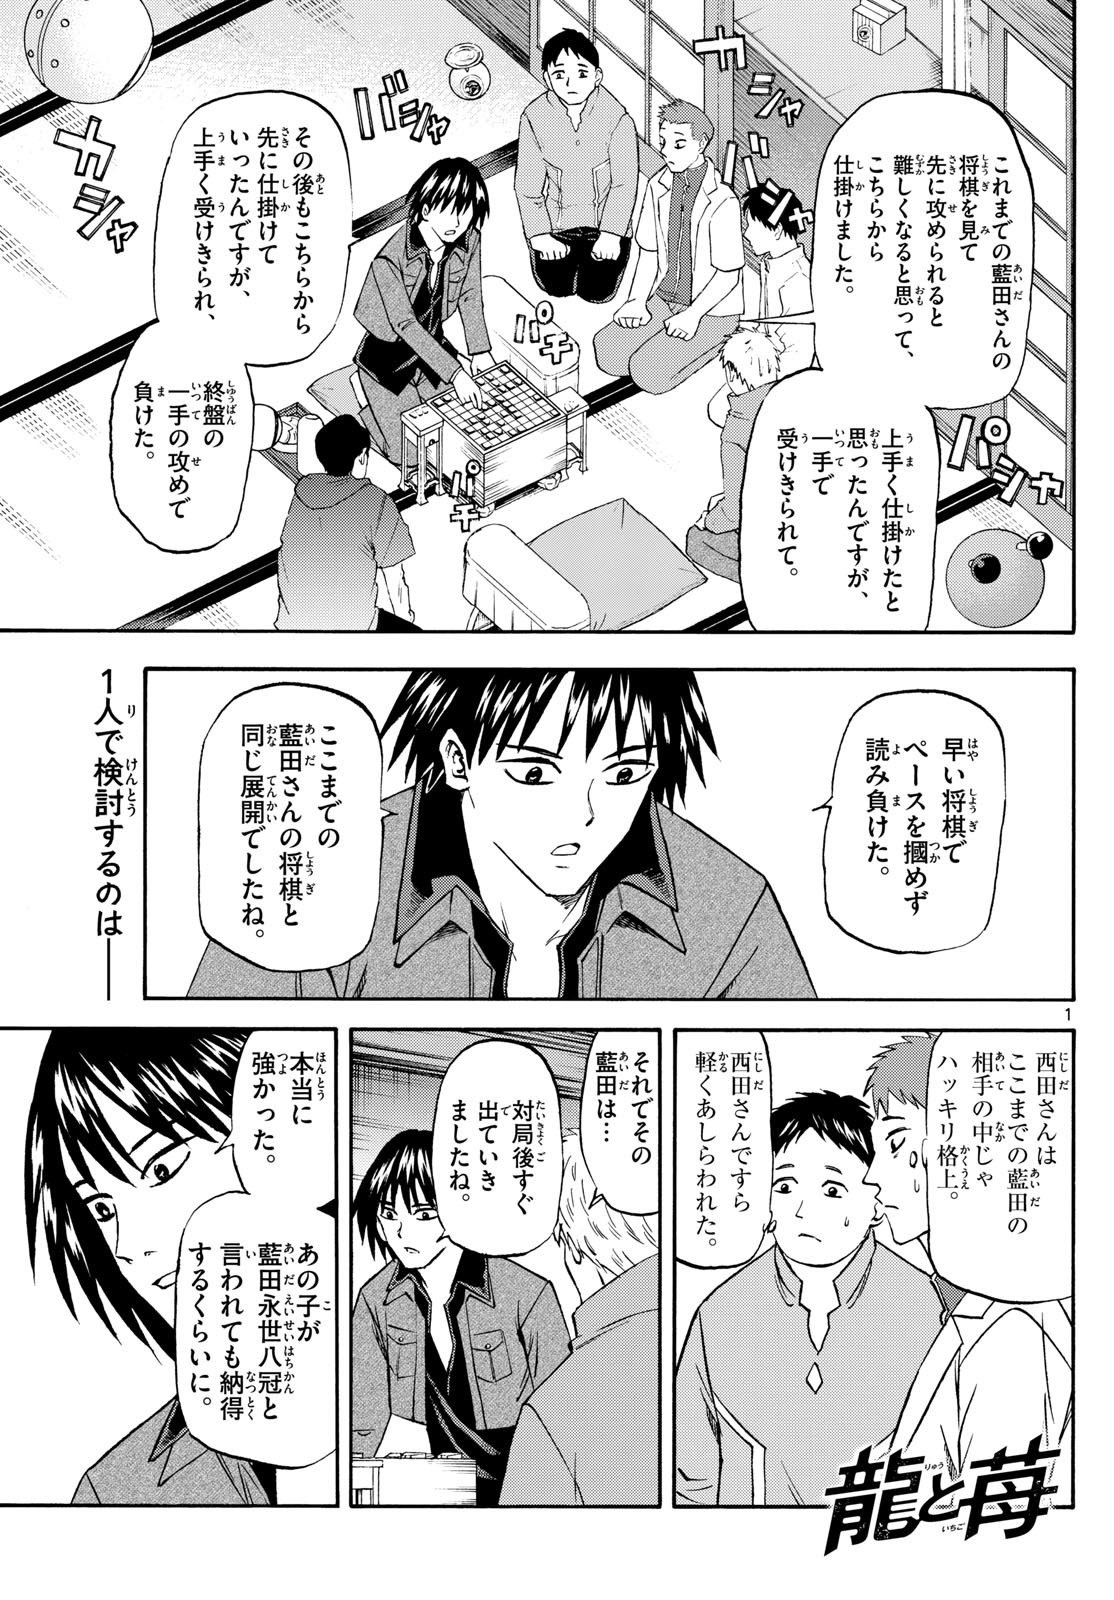 Ryu-to-Ichigo - Chapter 195 - Page 1